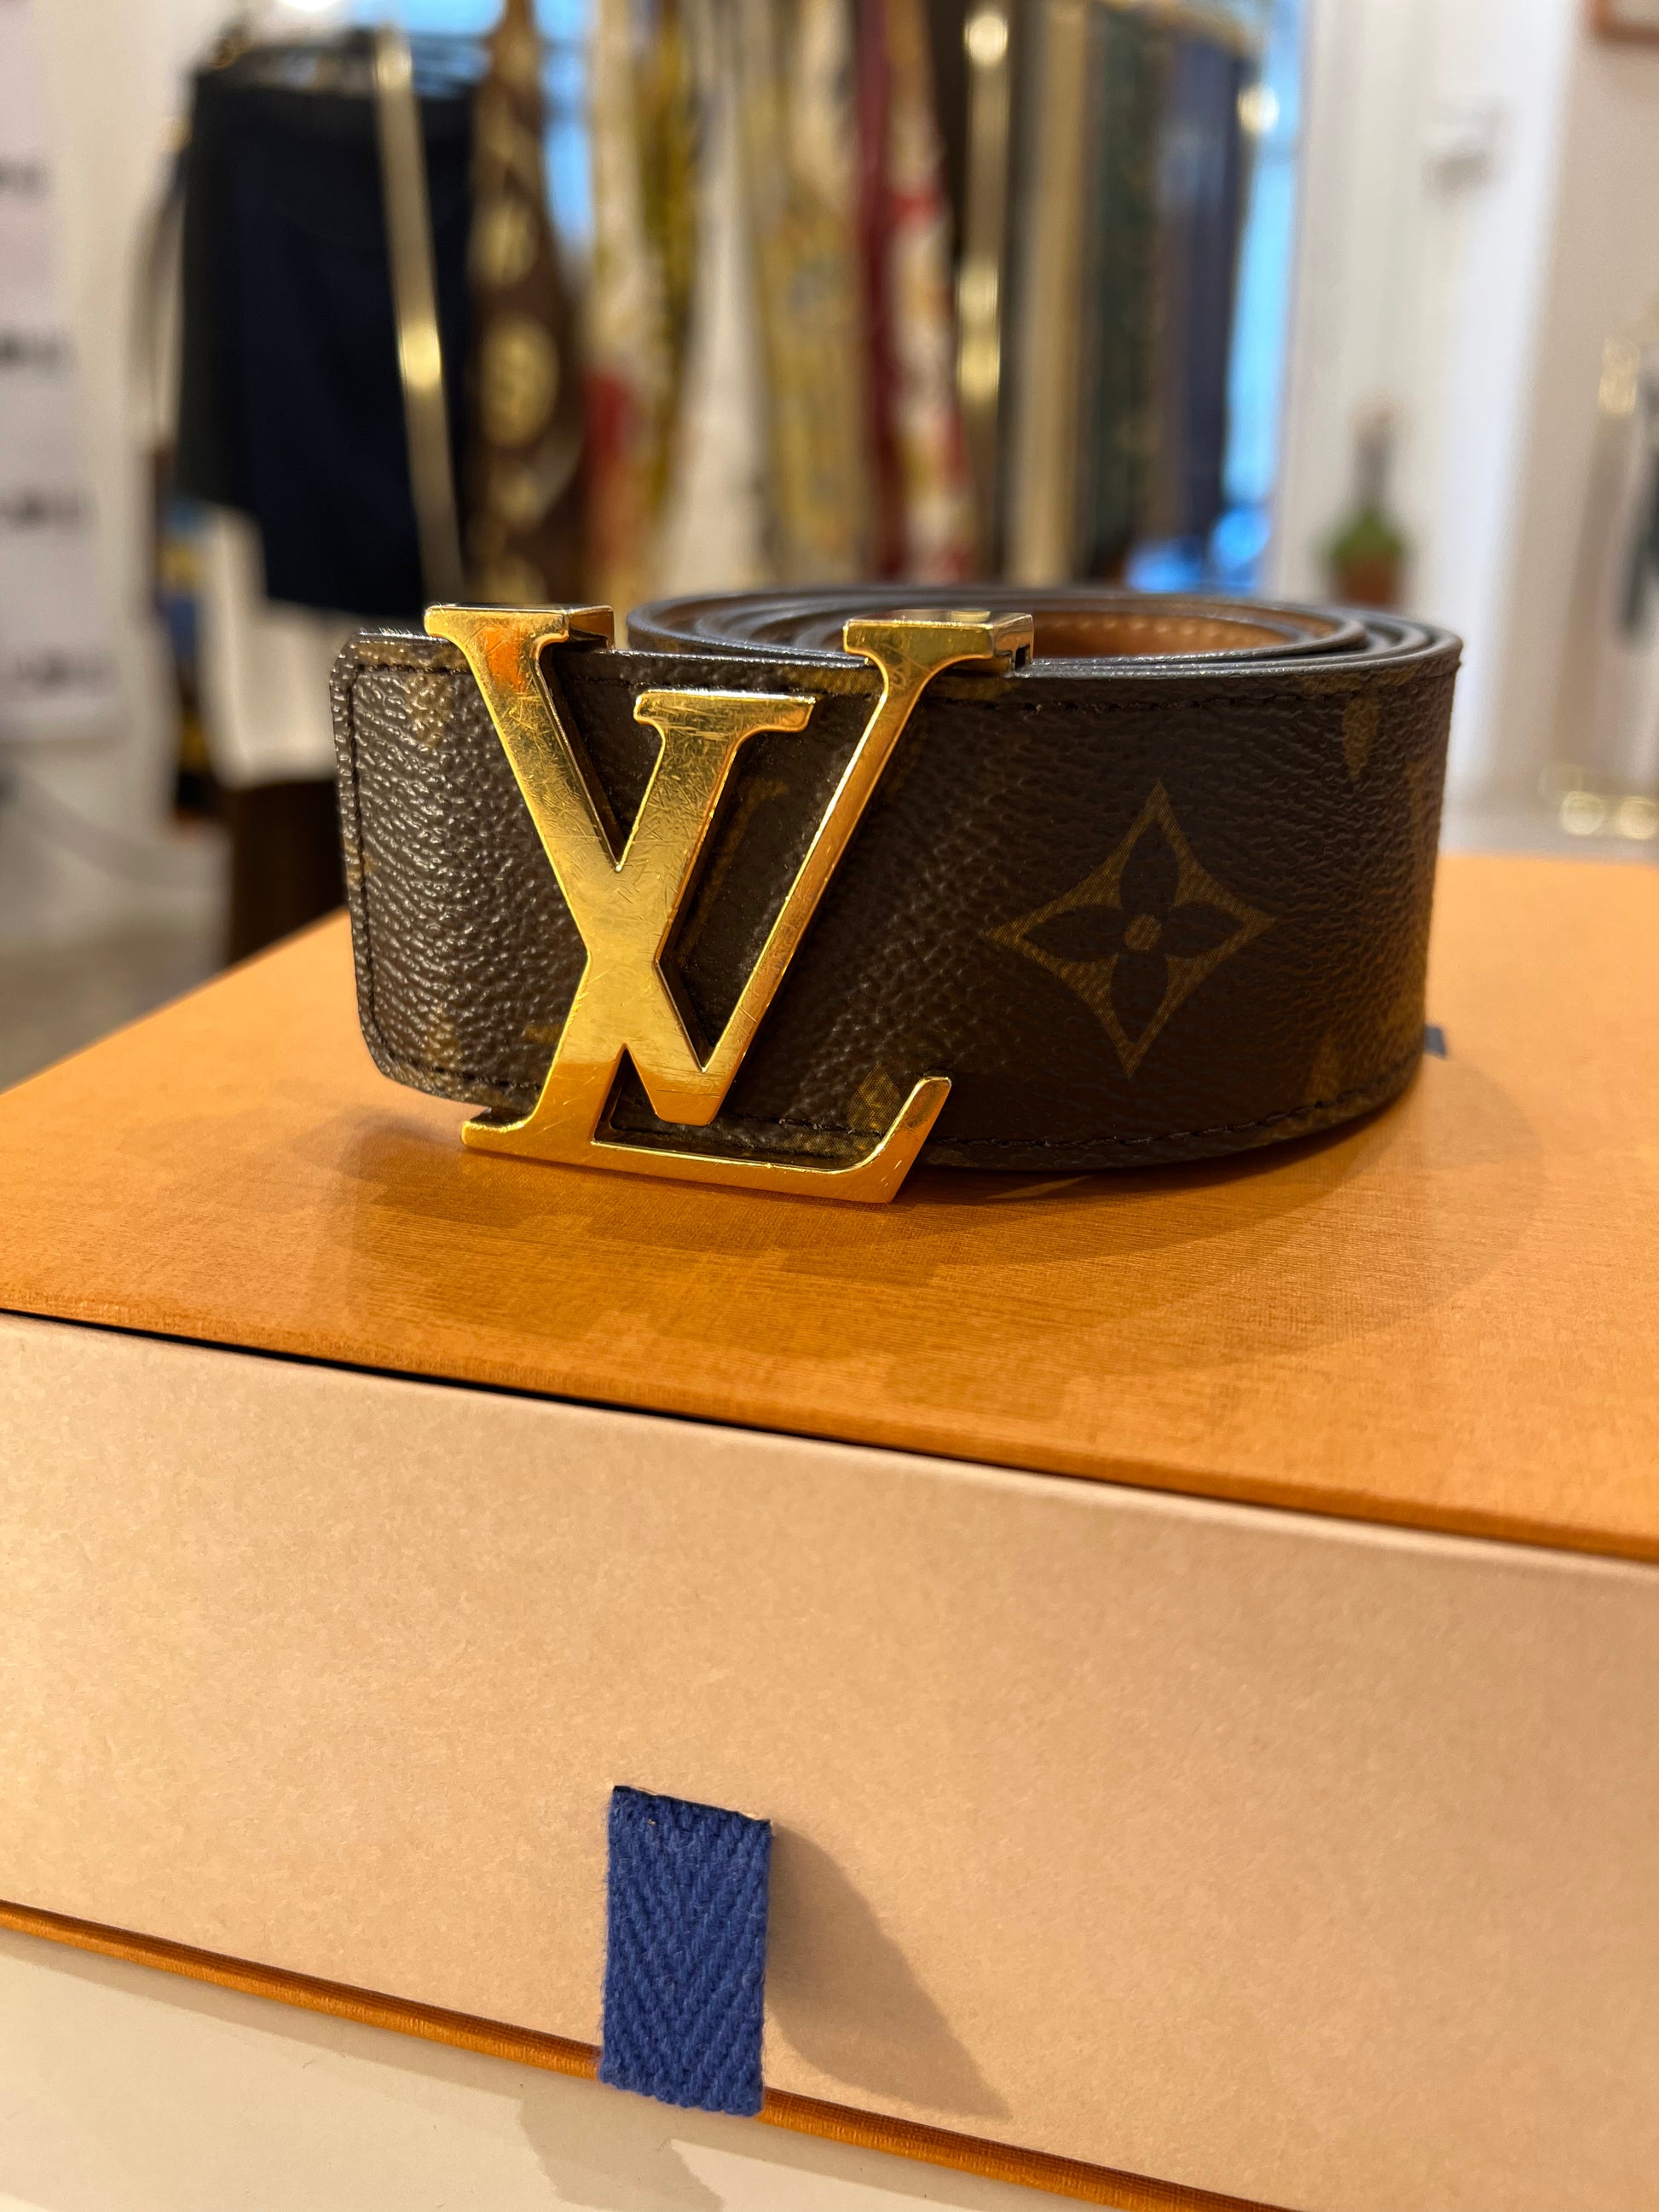 Cintura louis vuitton - Abbigliamento e Accessori In vendita a Mantova